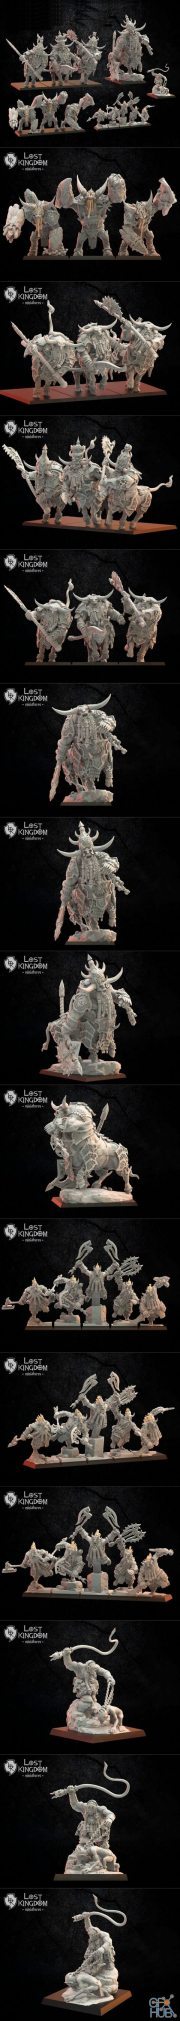 Lost Kingdoms – 3D Print